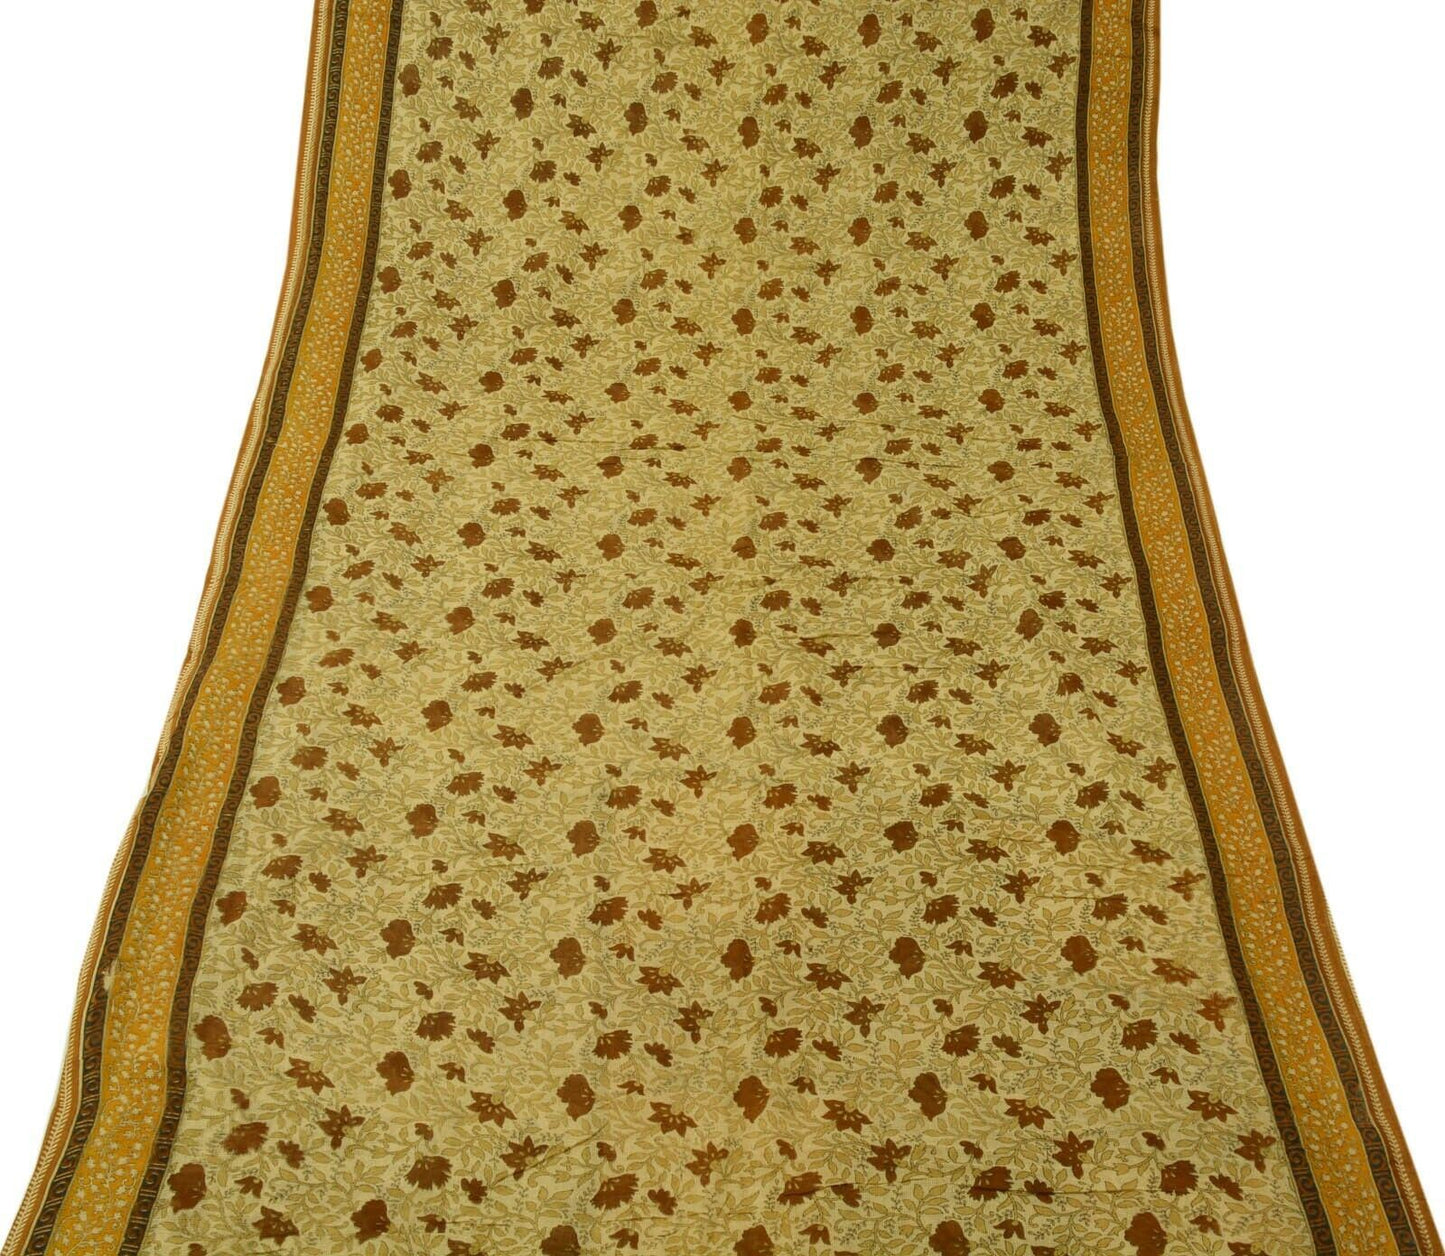 Vintage Saree 100% Pure Cotton Super Net Cream Printed Scrap Sari For Craft